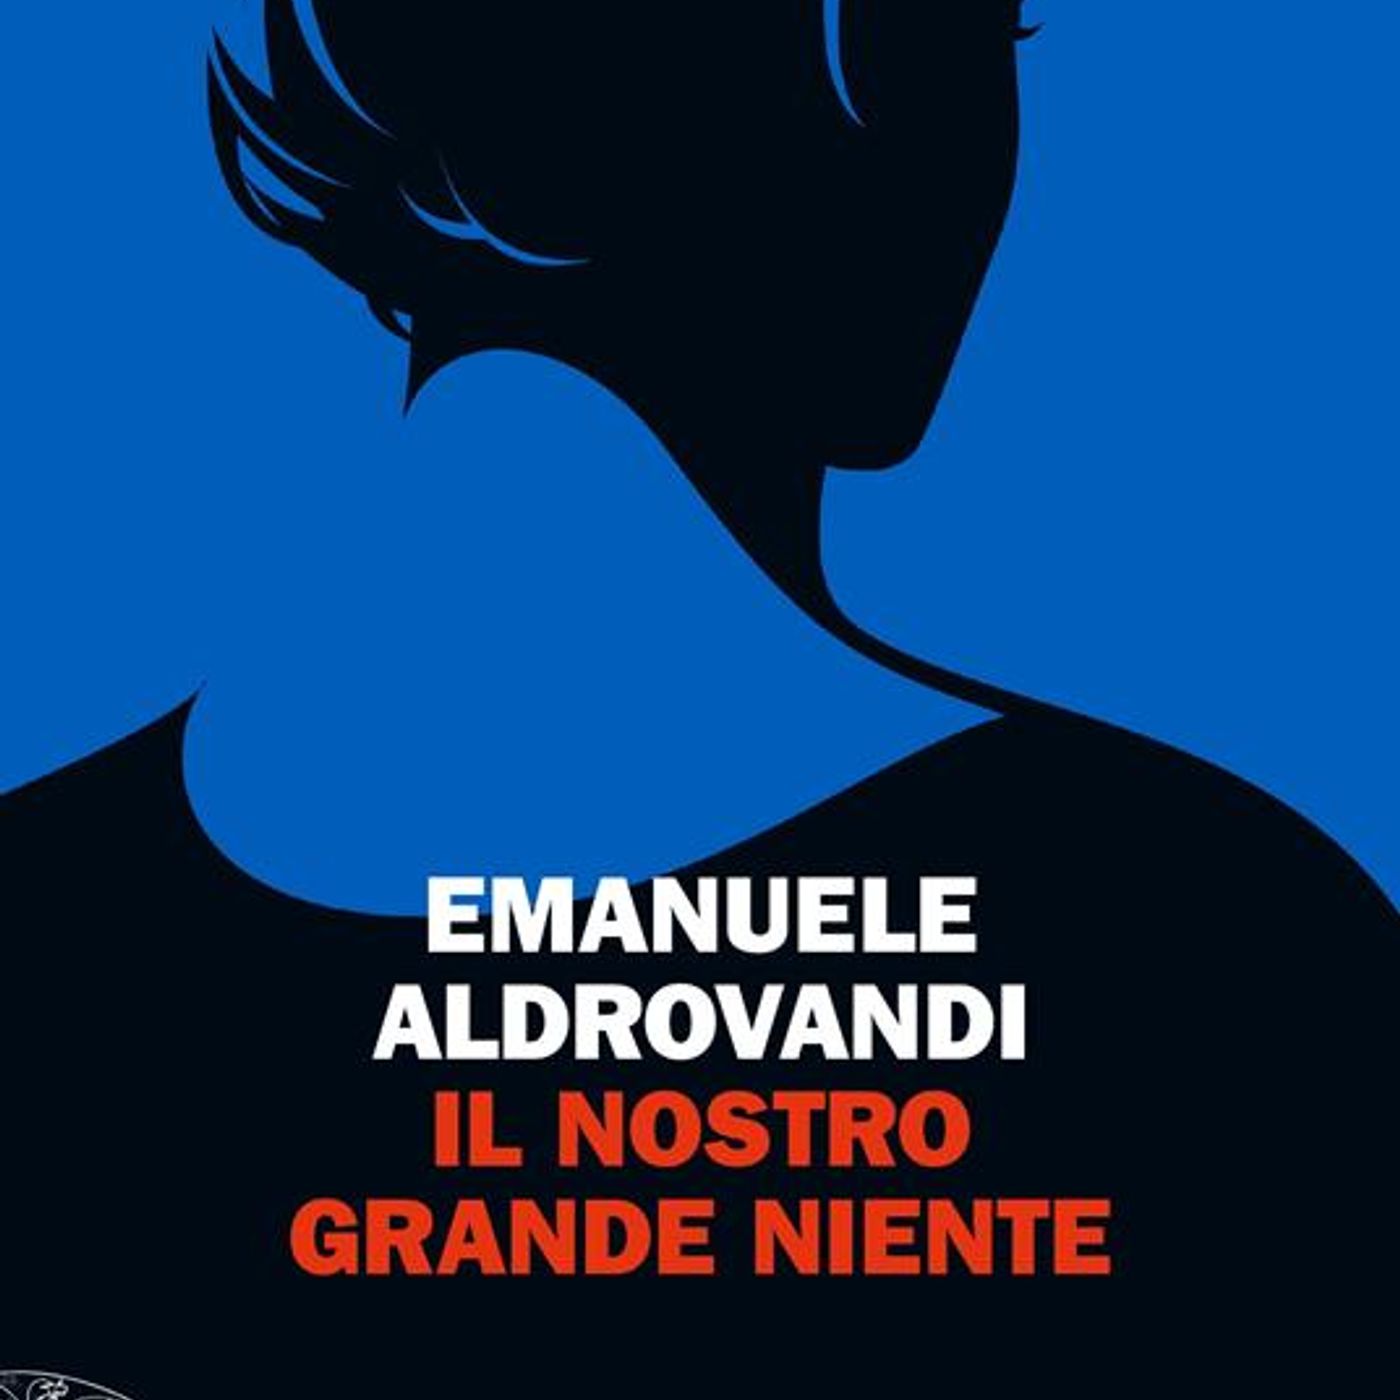 Emanuele Aldrovandi "Il nostro grande niente"